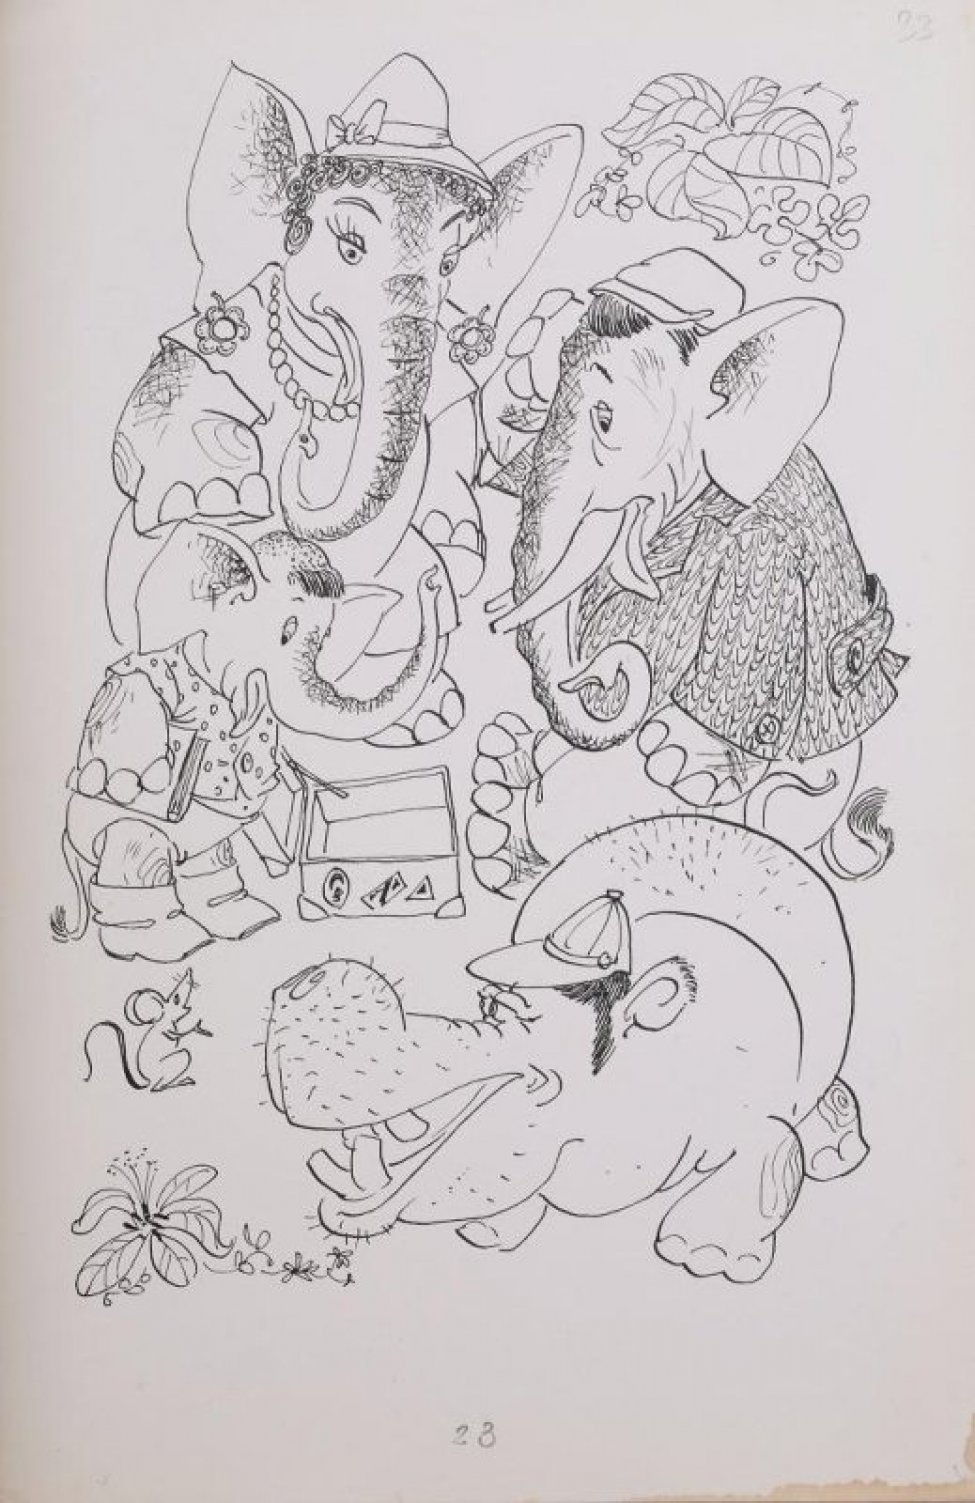 Стилизованное изображение группы зверей, собравшихся вокруг открытого пустого чемодана. Слева направо: мышка, слоненок с книжкой, слониха с бусами, серьгами, в шляпе; слон в кепке и пиджаке, бегемот в кепке.